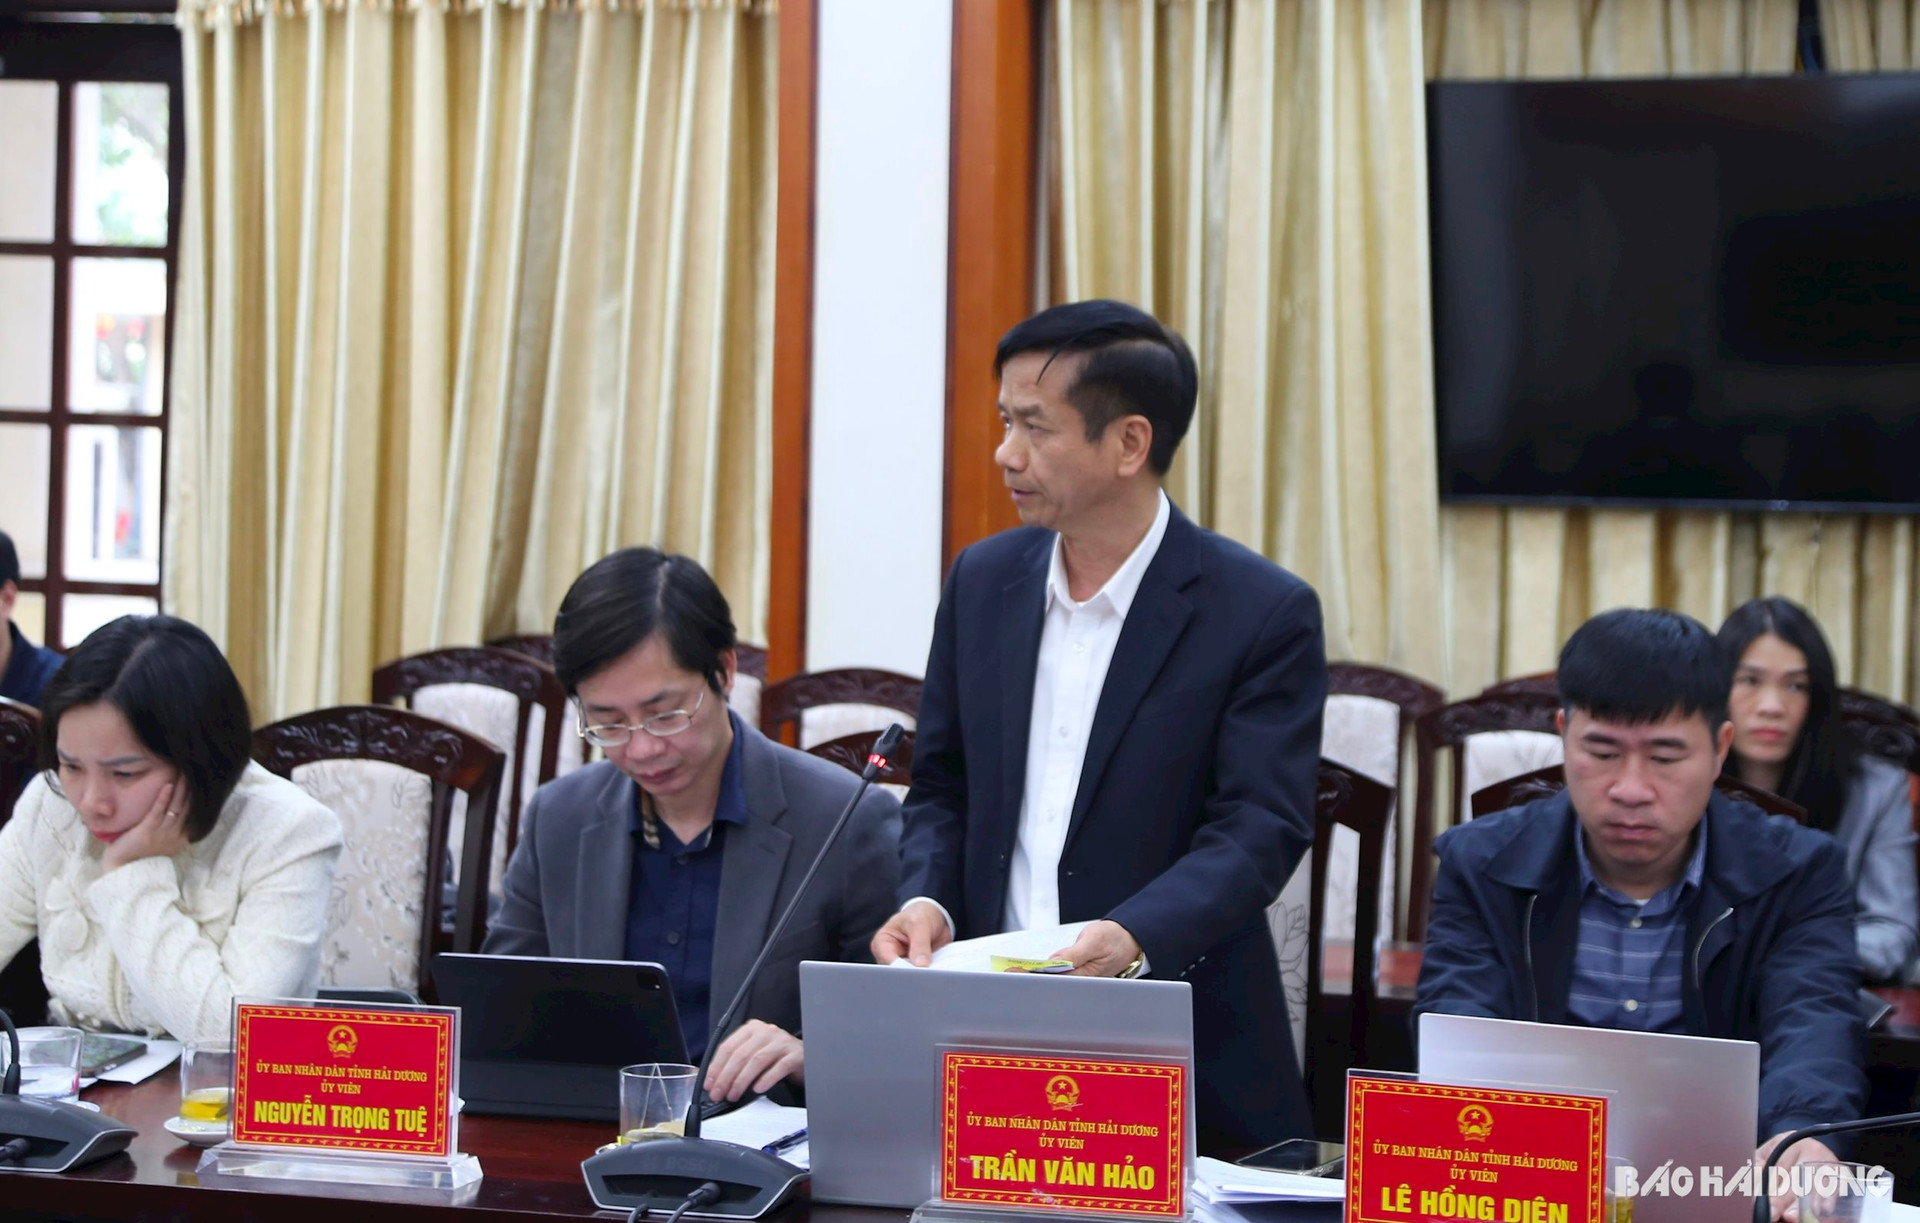 Giám đốc Sở Công thương Trần Văn Hảo trình bày tờ trình thành lập cụm công nghiệp Thái Tân